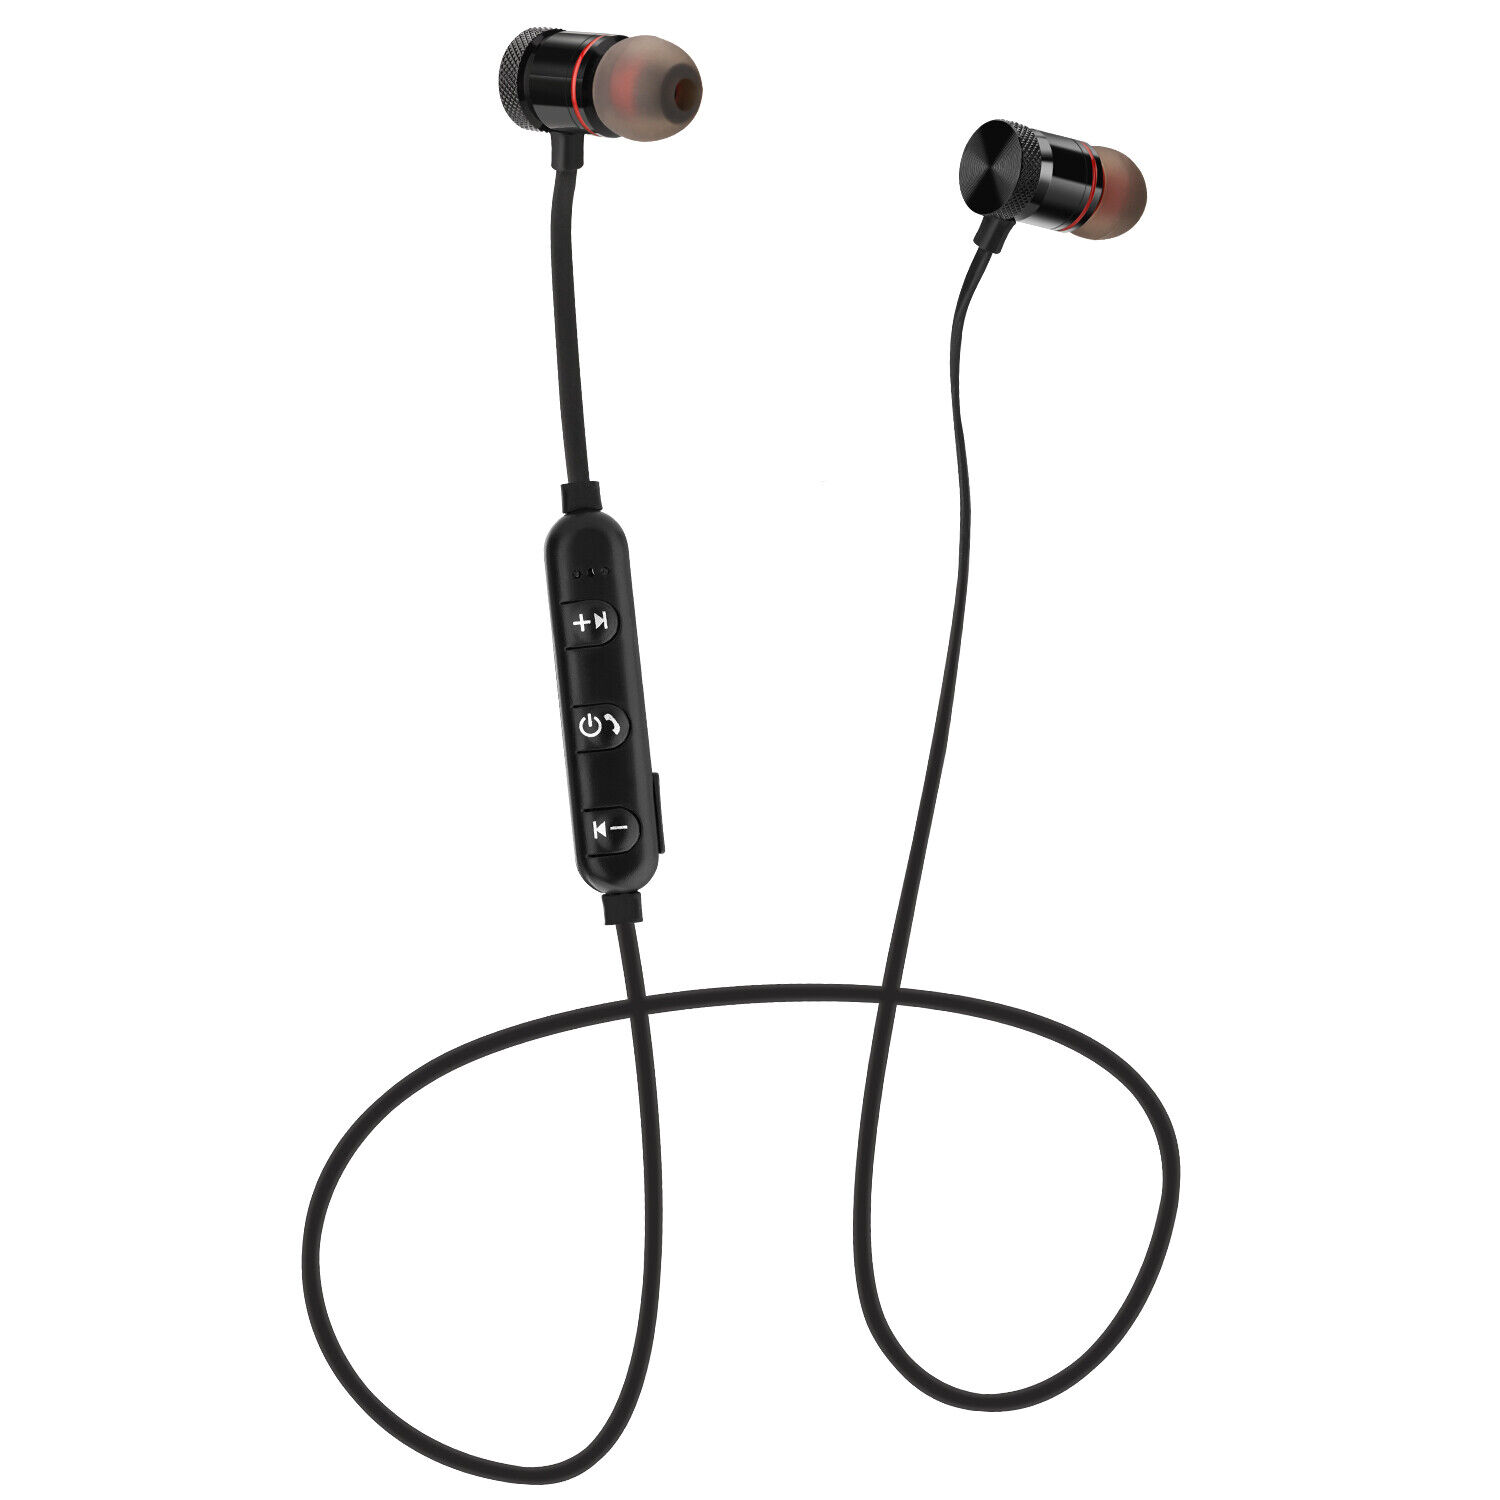 Waterproof Bluetooth Earbuds HD Stereo Sport Wireless Headphones in Ear Headsets Agptek Does Not Apply - фотография #9